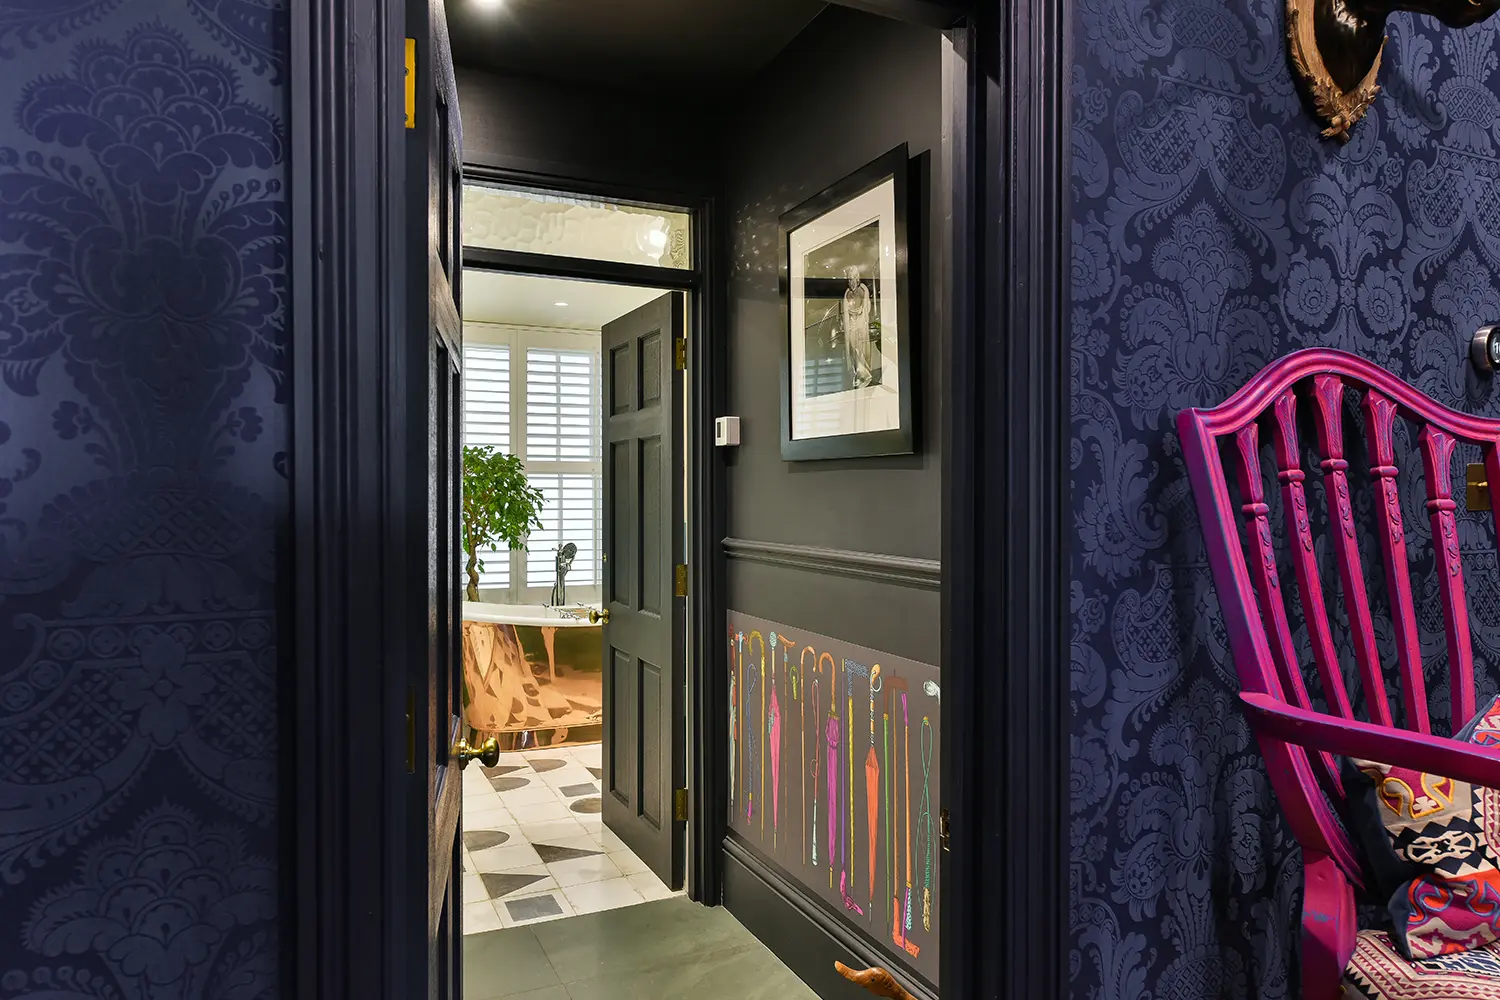 Clifton, Bristol luxury apartment interior design - kitchen design